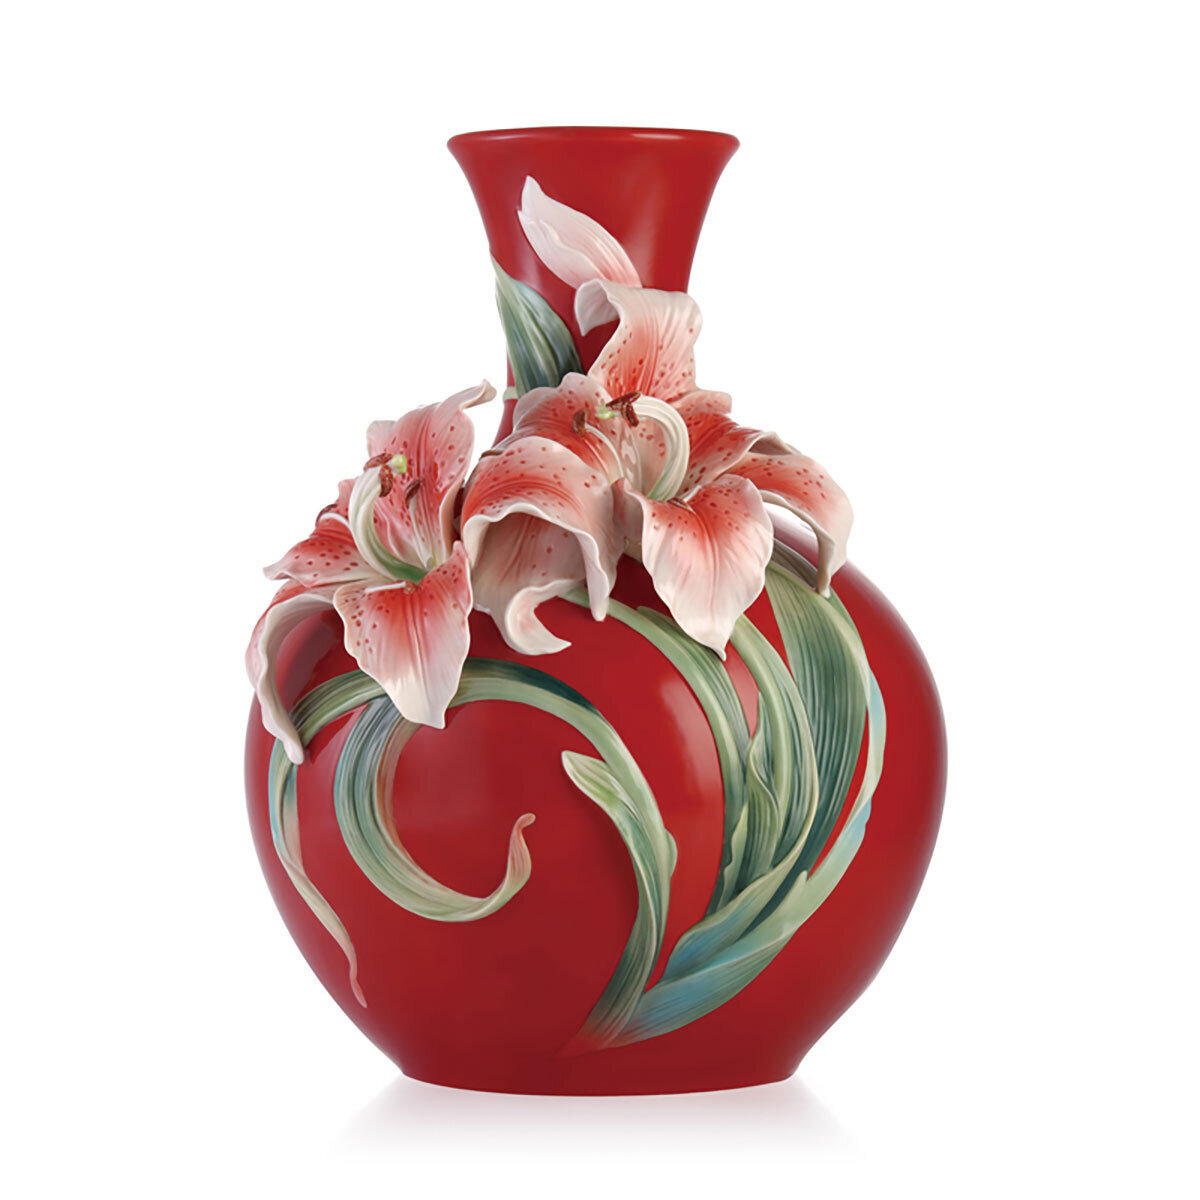 Franz Porcelain Harmonious Joy-Lily Design Sculptured Porcelain Vase FZ03176